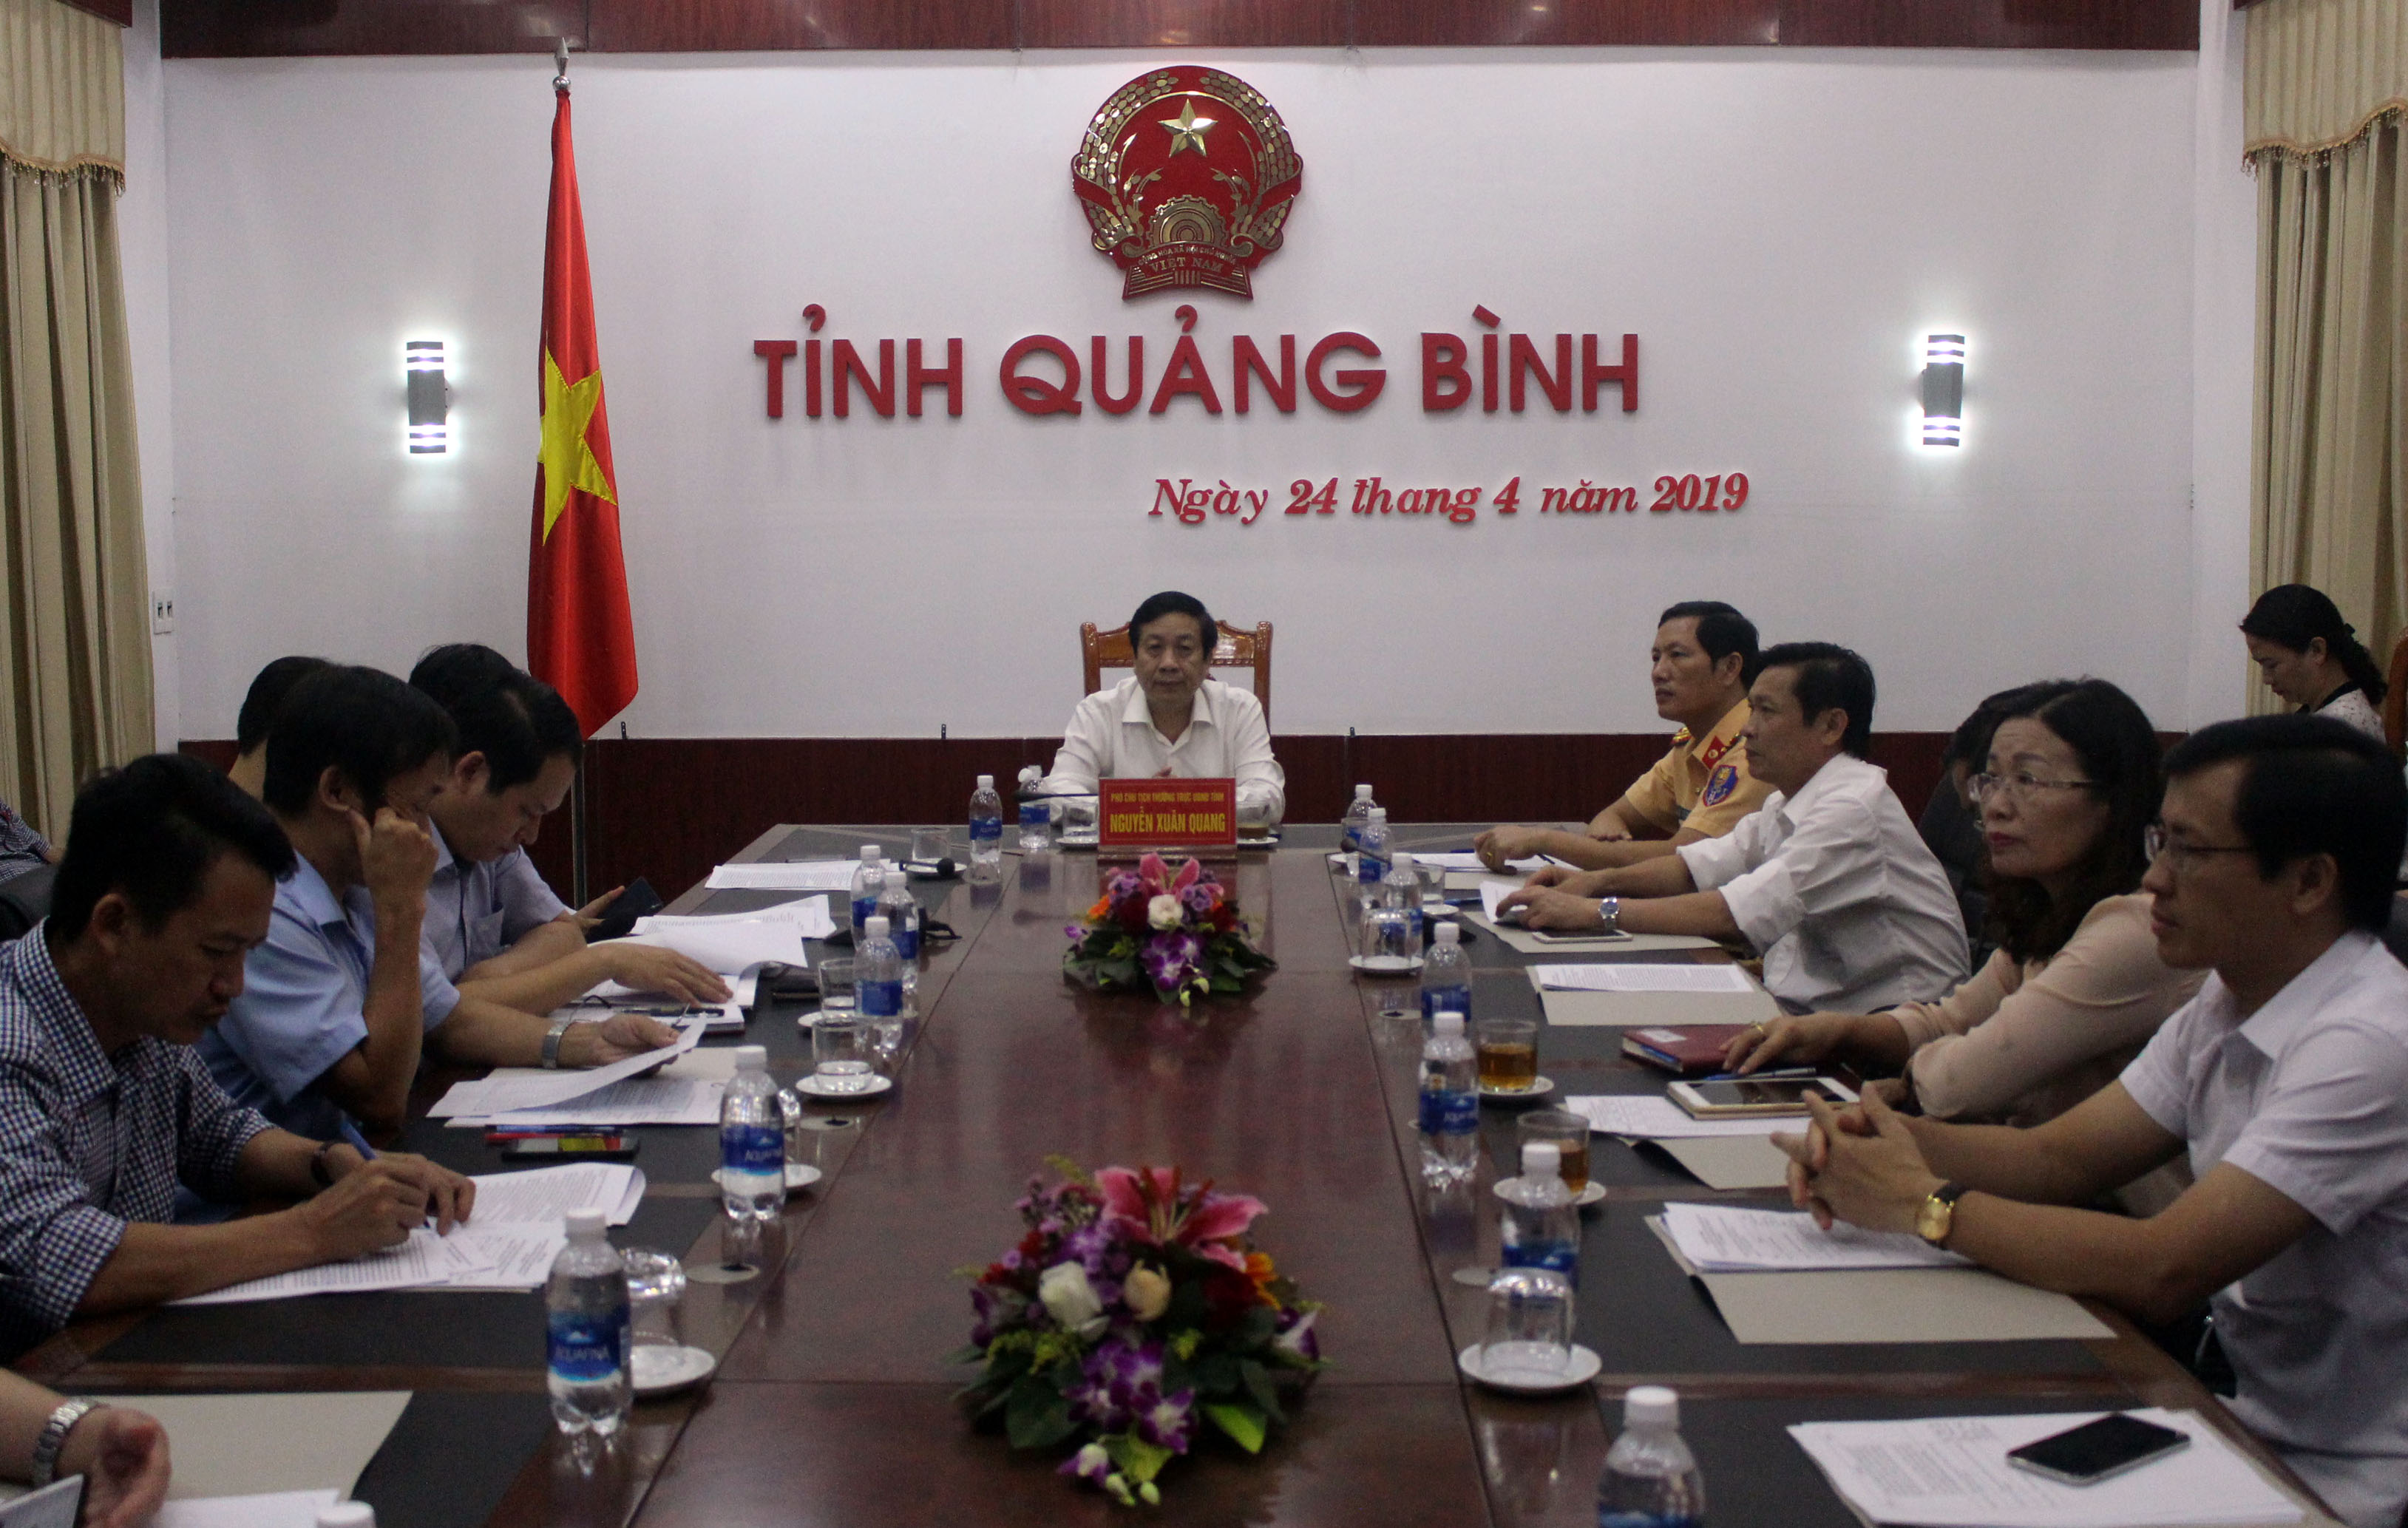 Toàn cảnh hội nghị đầu cầu tỉnh Quảng Bình